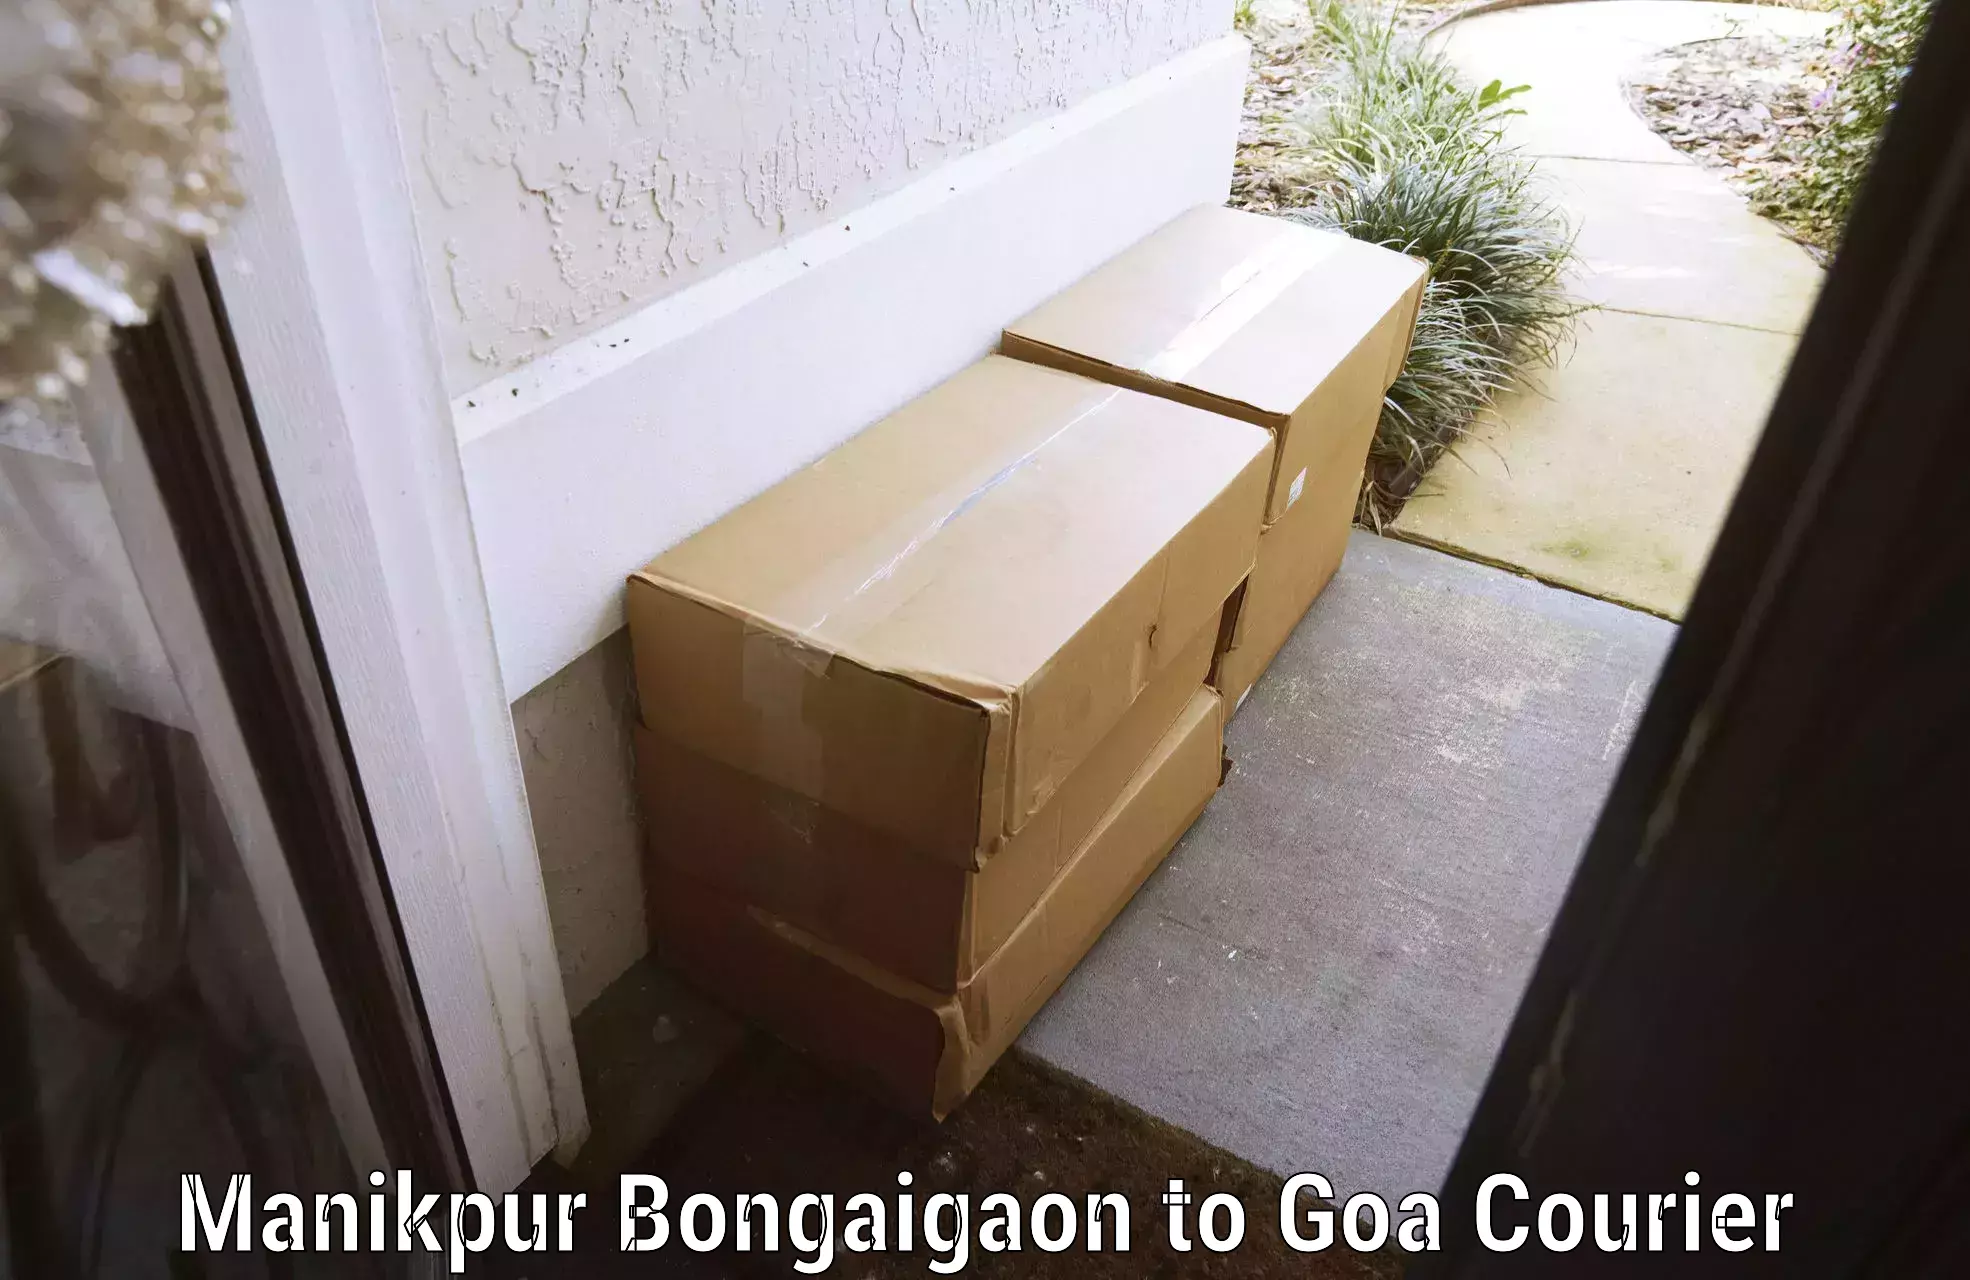 Luggage shipment tracking Manikpur Bongaigaon to Goa University